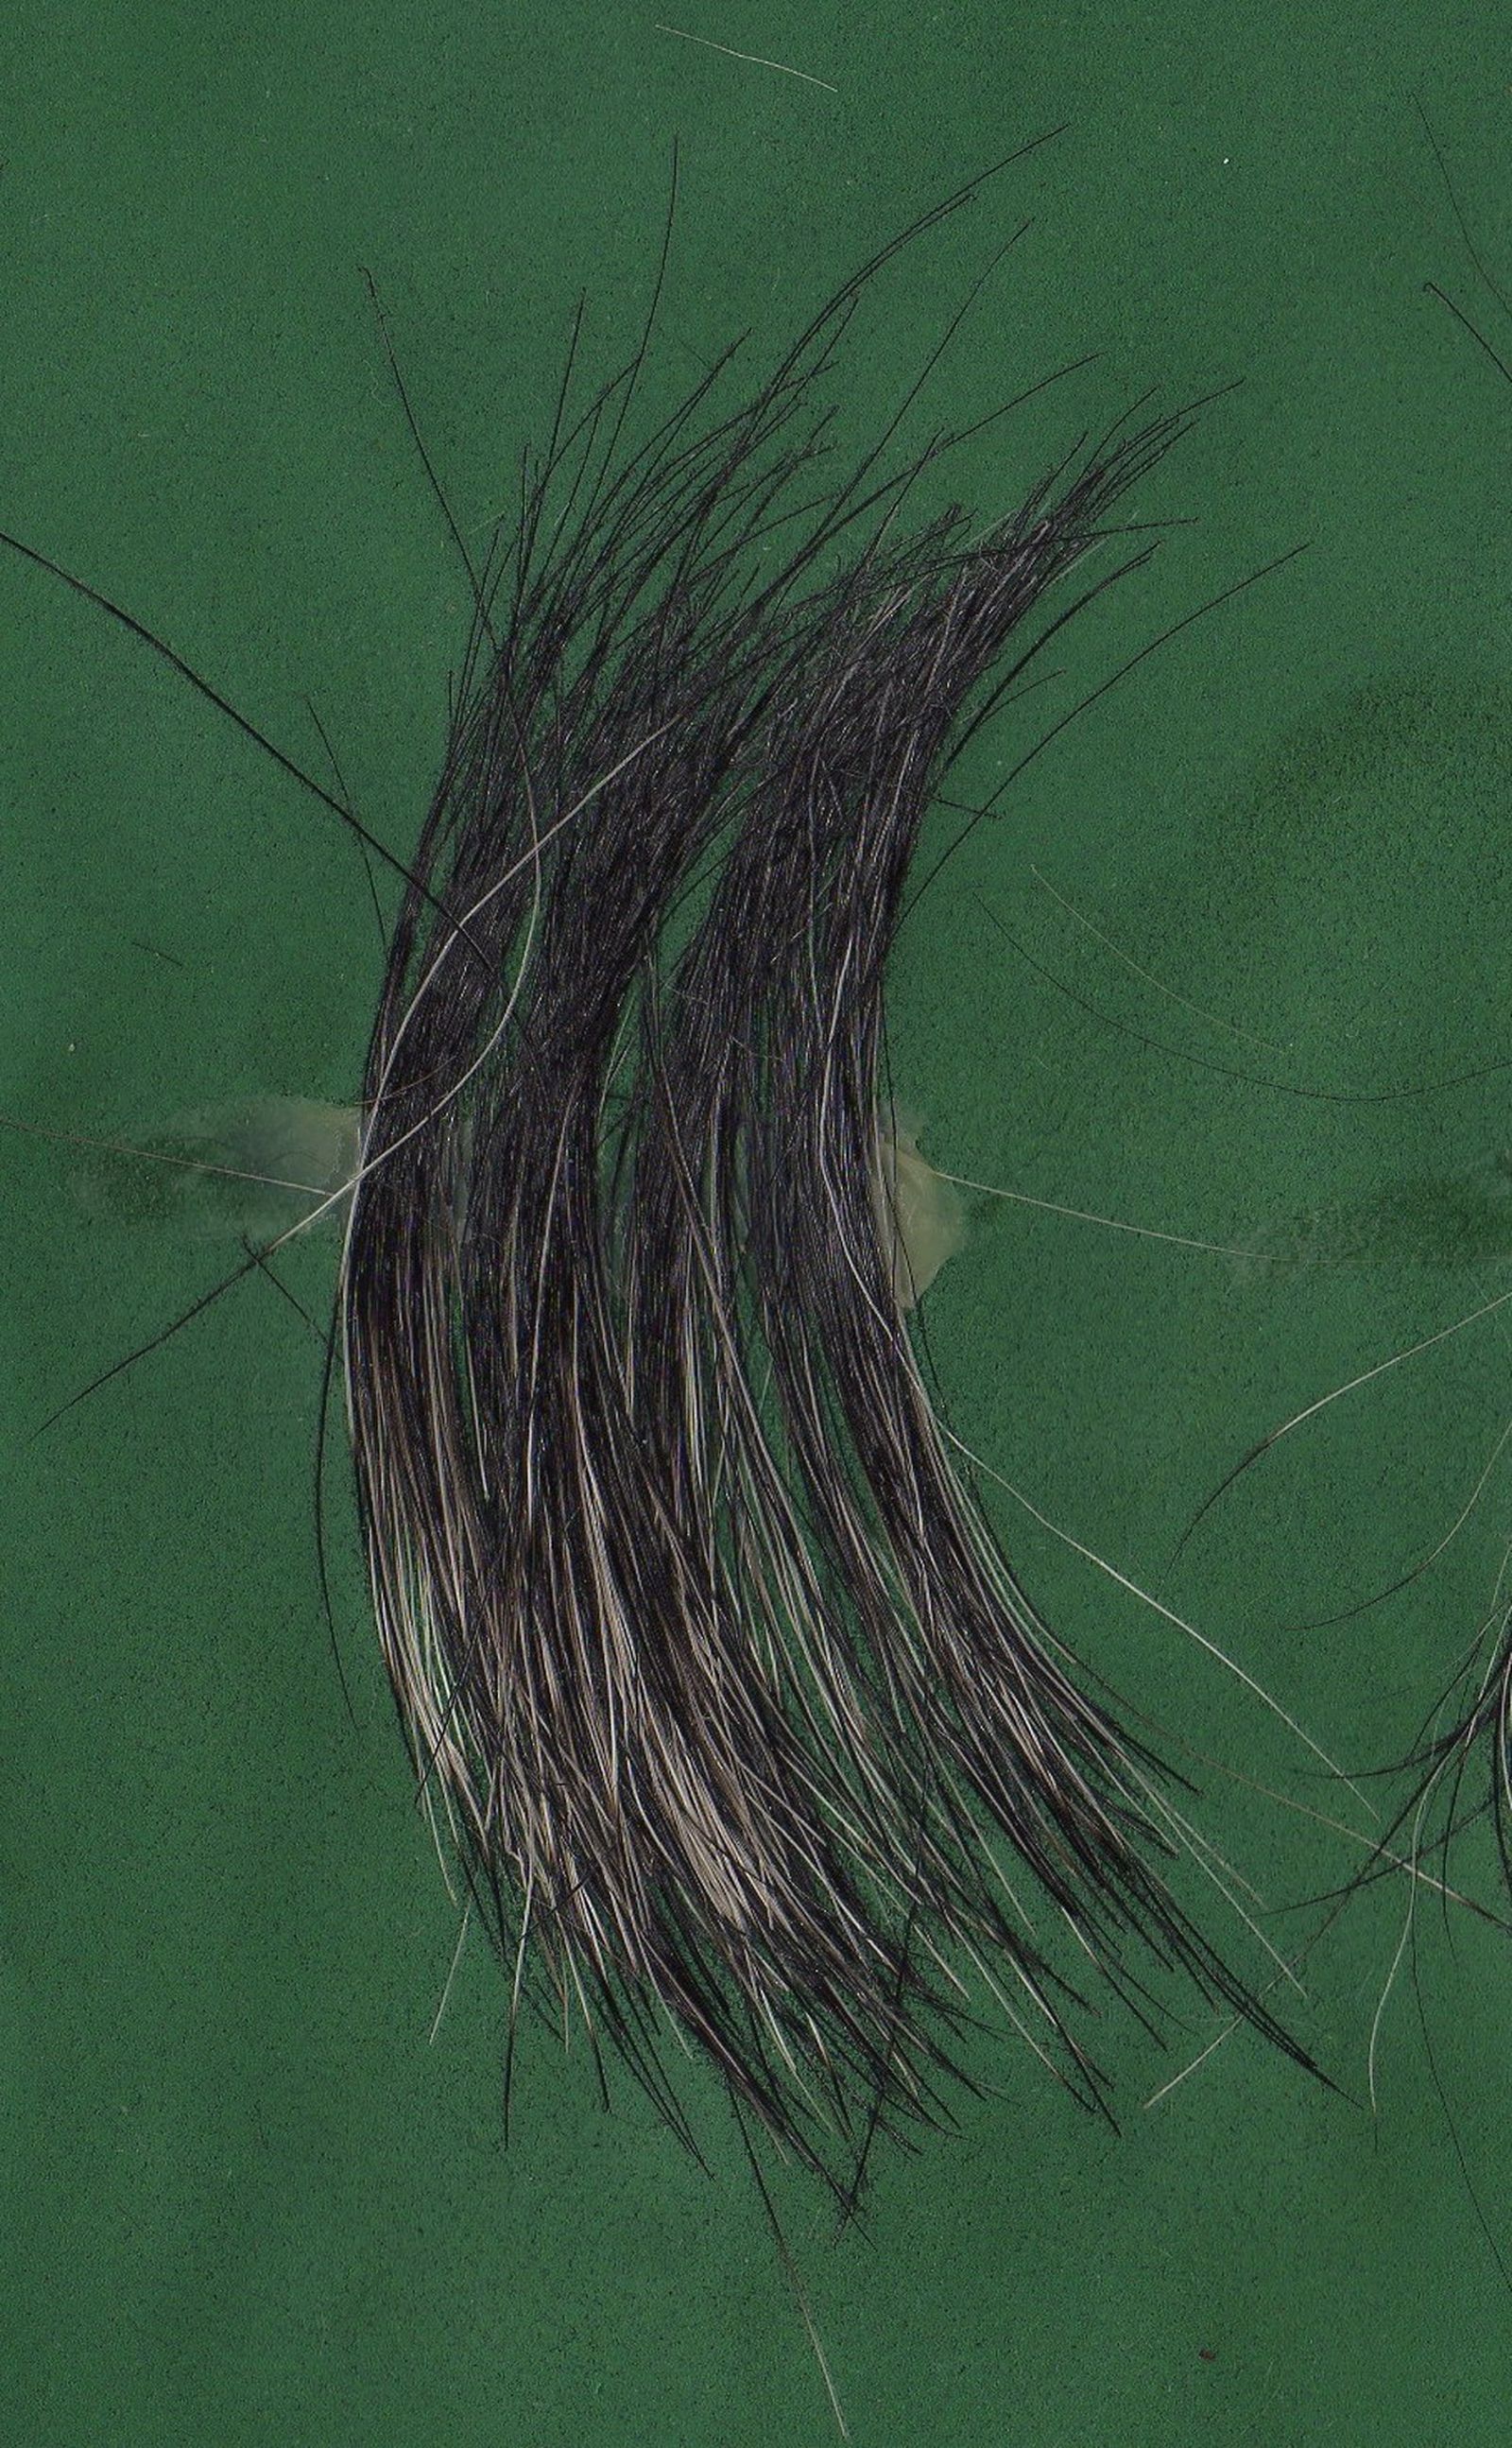 Kurzes und festes Haar in der Fellfarbe pfeffersalz vom Schnauzer auf grünem Untergrund im Großformat